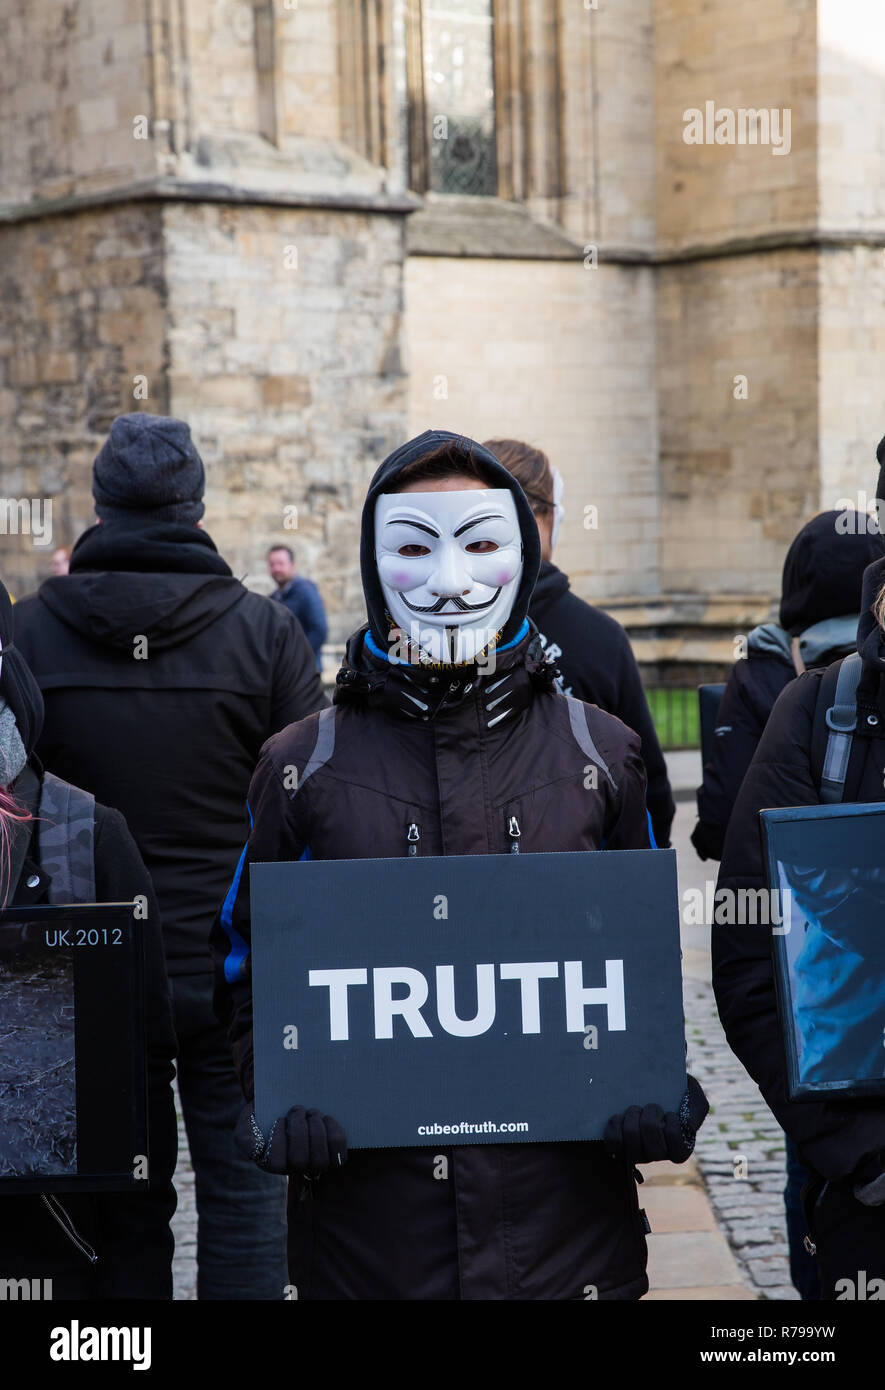 YORK, UK - 8 décembre 2018. Les membres du cube de vérité dans le groupe de protestation Vegan Guy Fawks masques et protestaient contre la cruauté envers les animaux. Banque D'Images